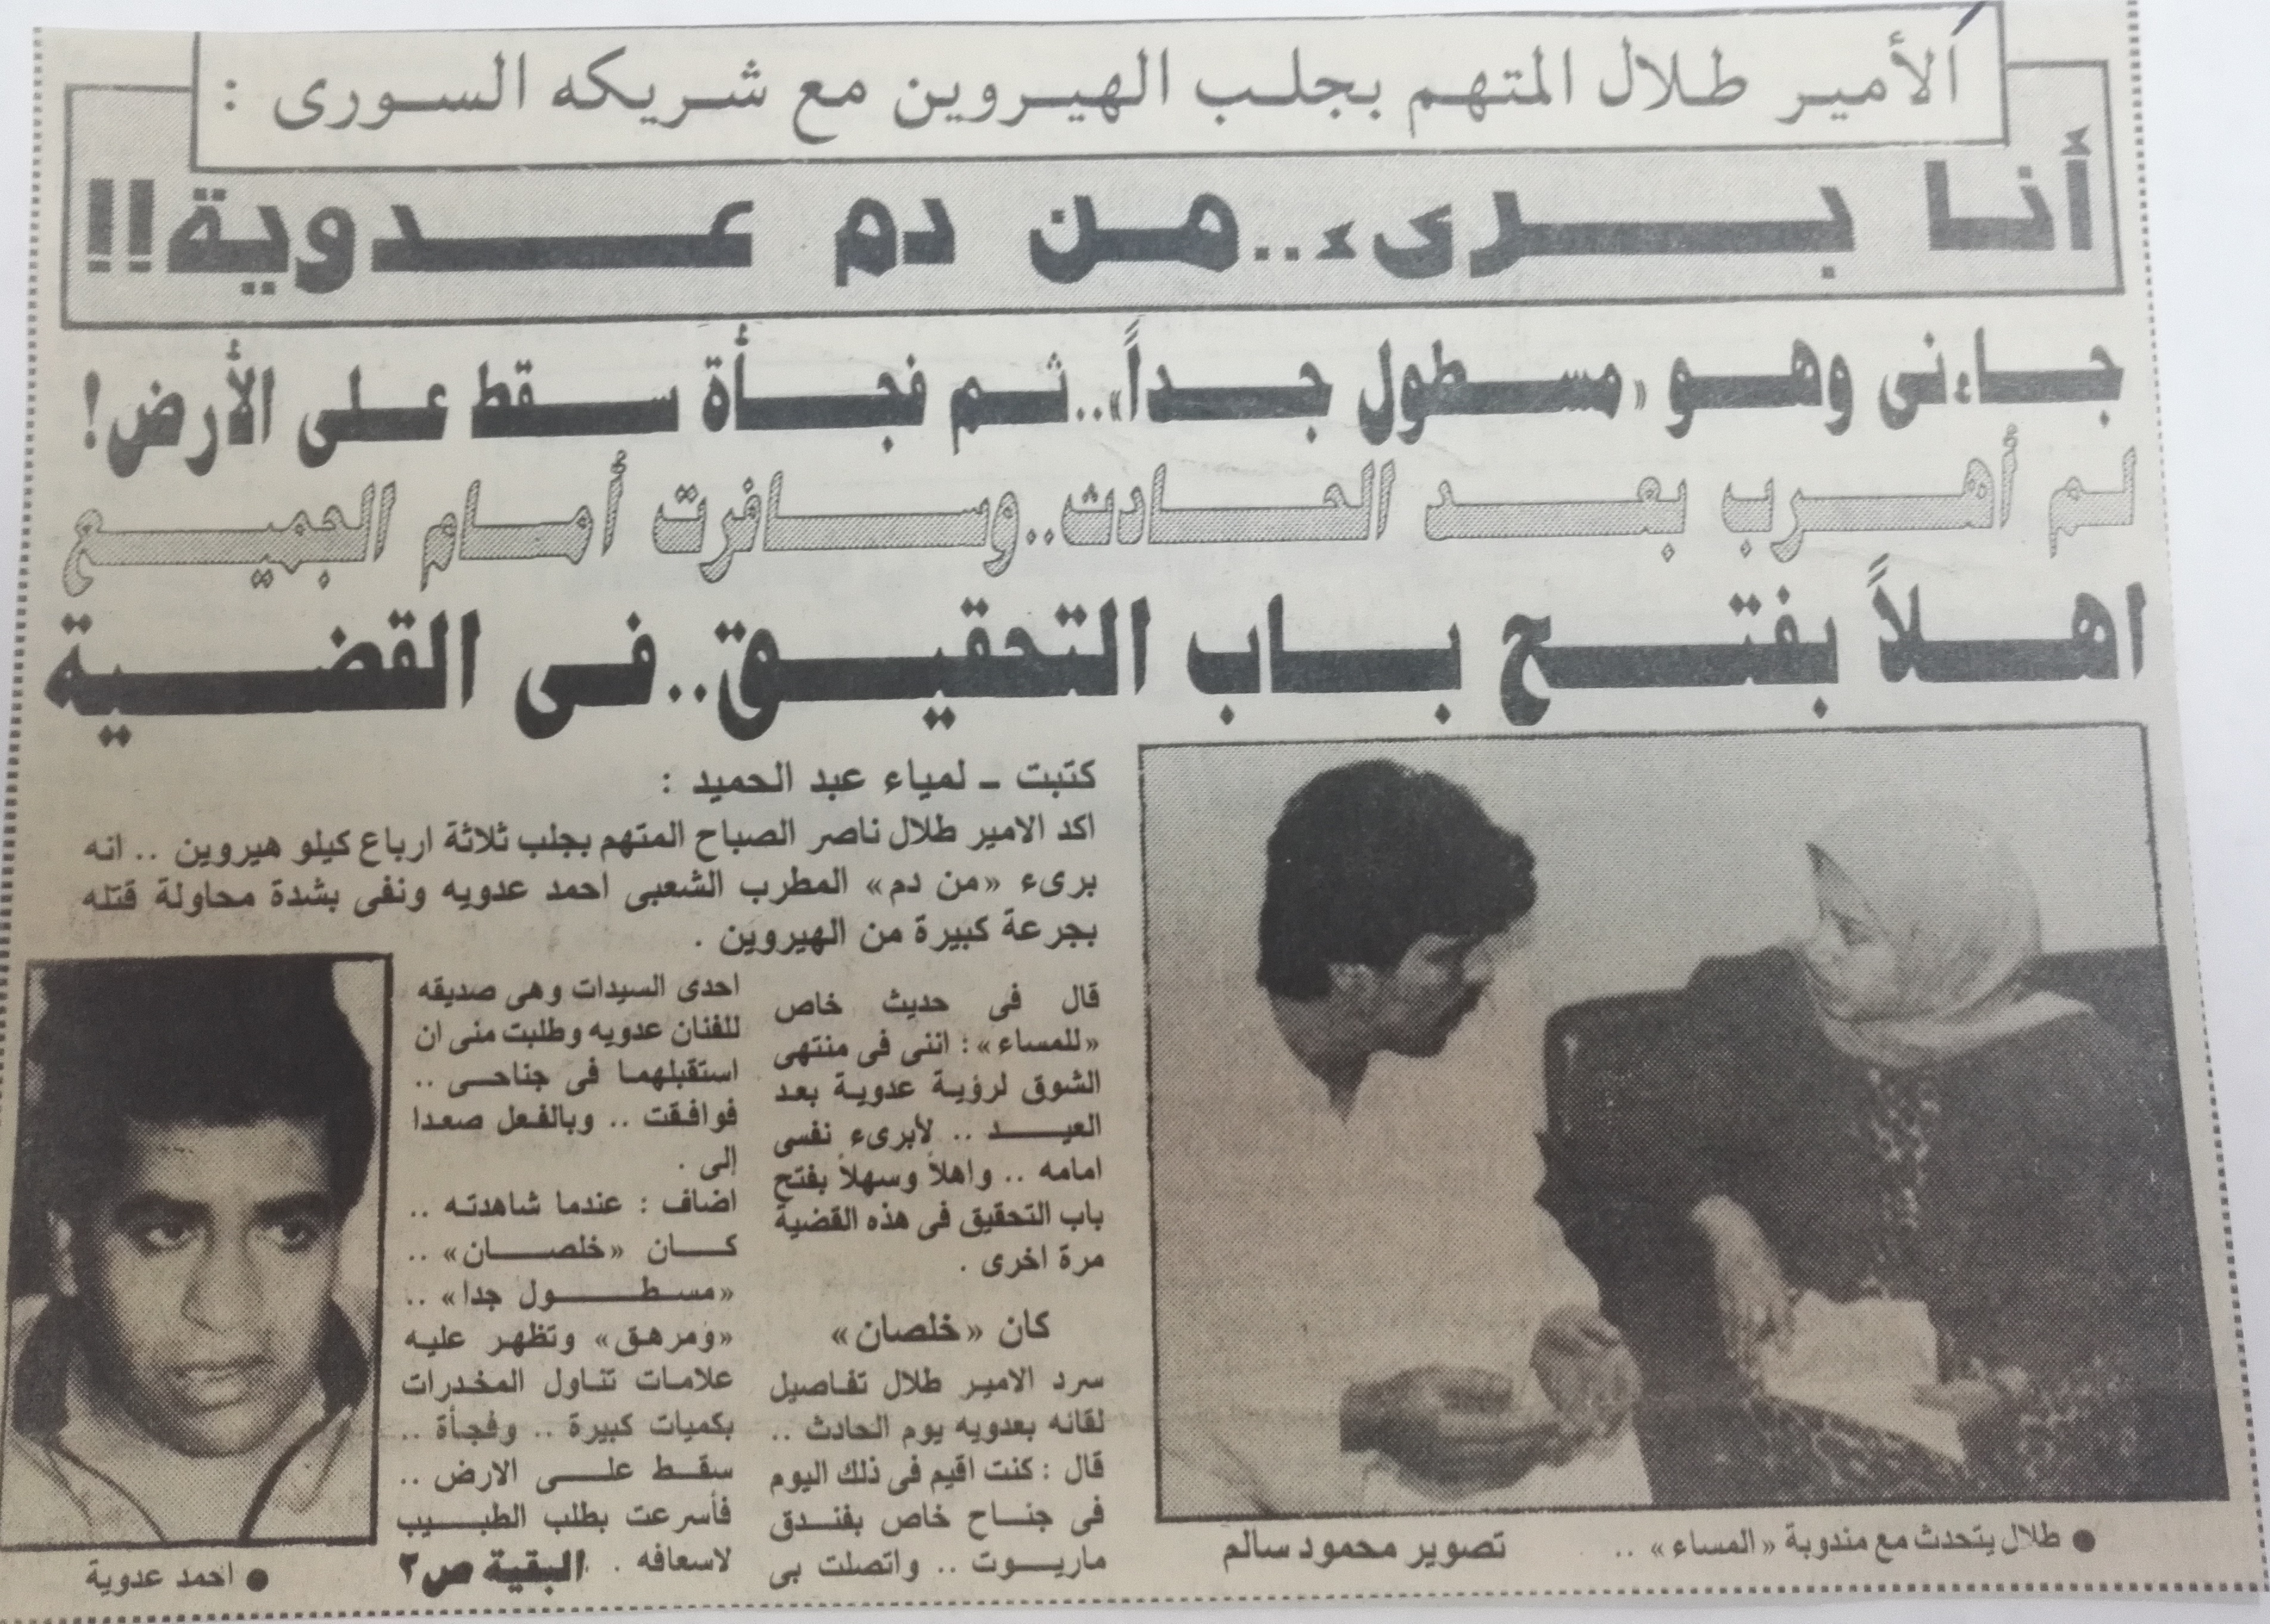 حوار الشيخ الكويتى مع جريدة المساء بعد القبض عليه عدد 18أبريل 1991